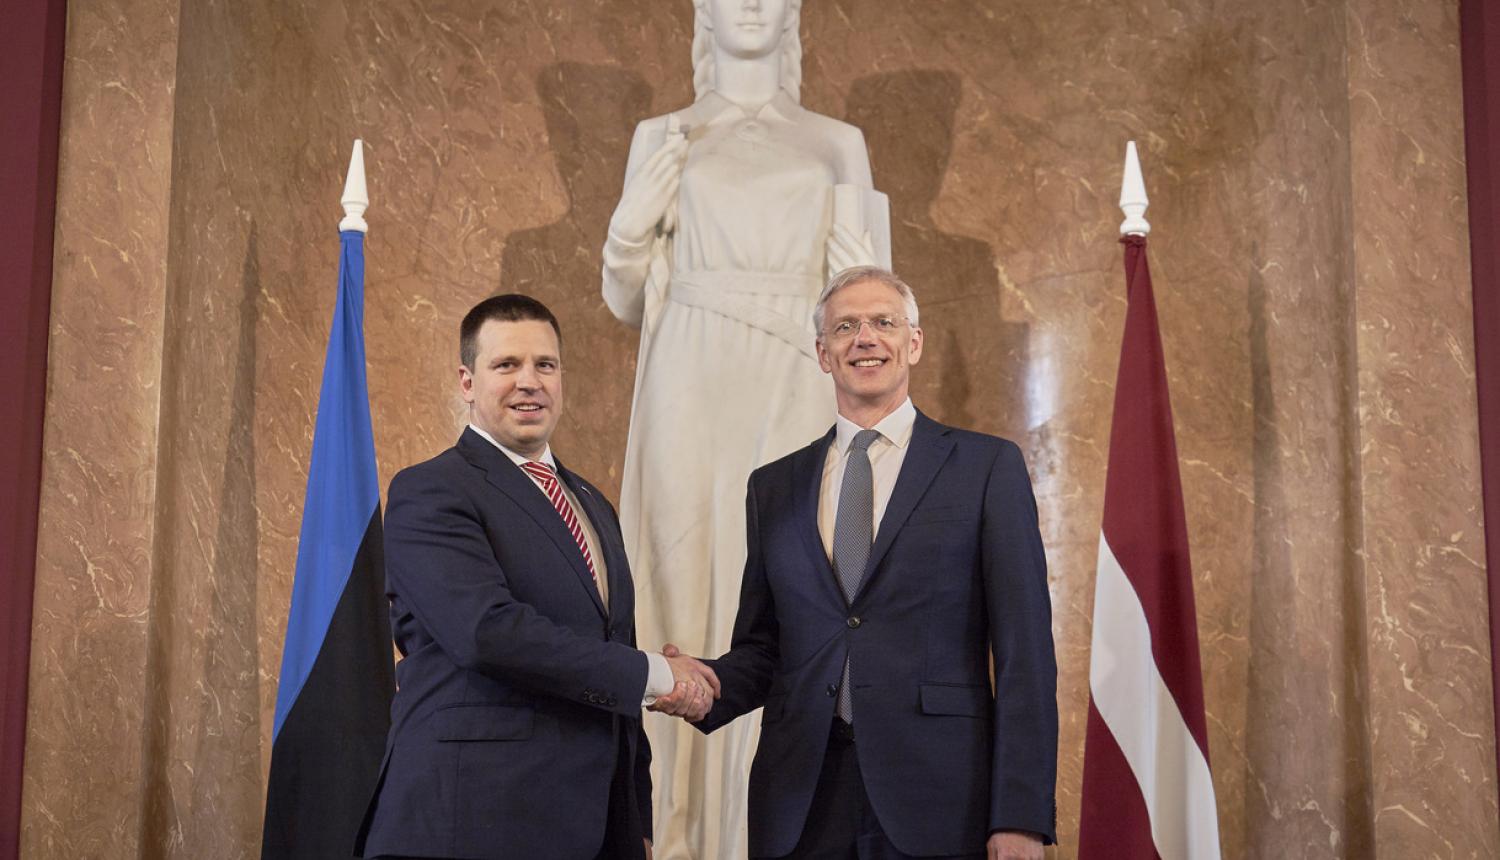 Kariņš: Latvijai un Igaunijai ir būtiski īstenot kopīgus reģionālos projektus enerģētikas un transporta jomā